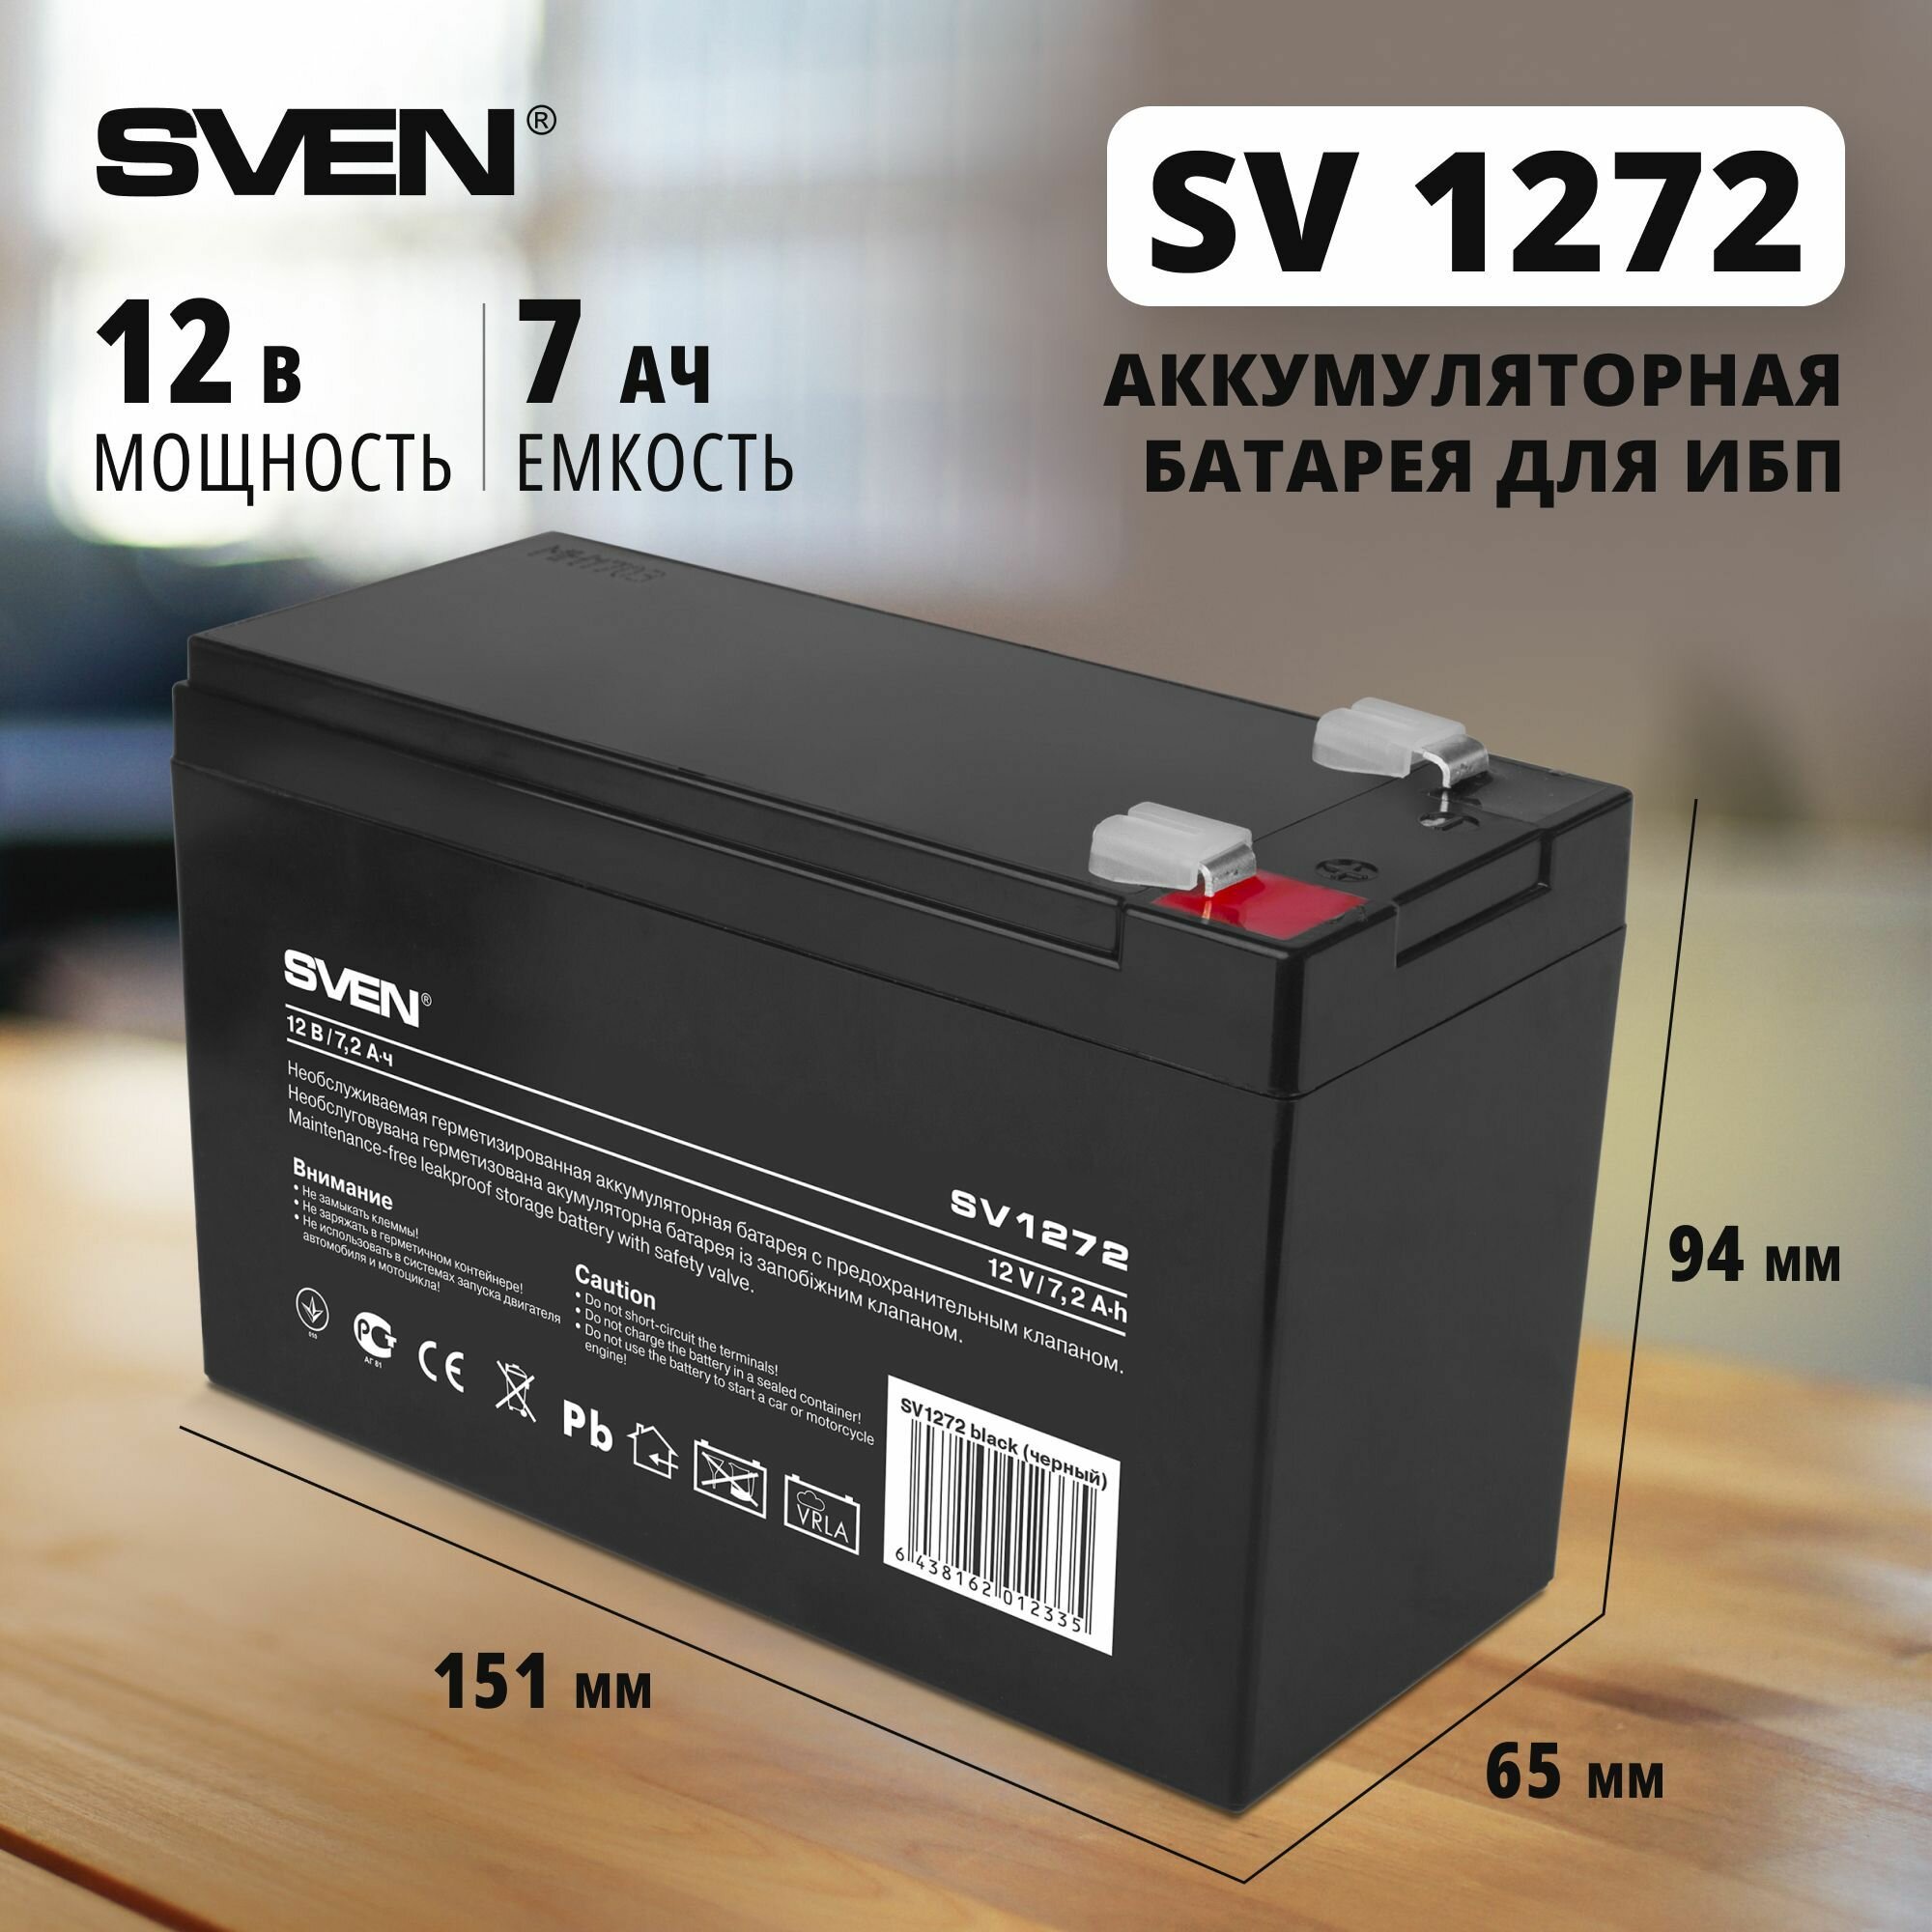 Батарея для ИБП Sven - фото №1